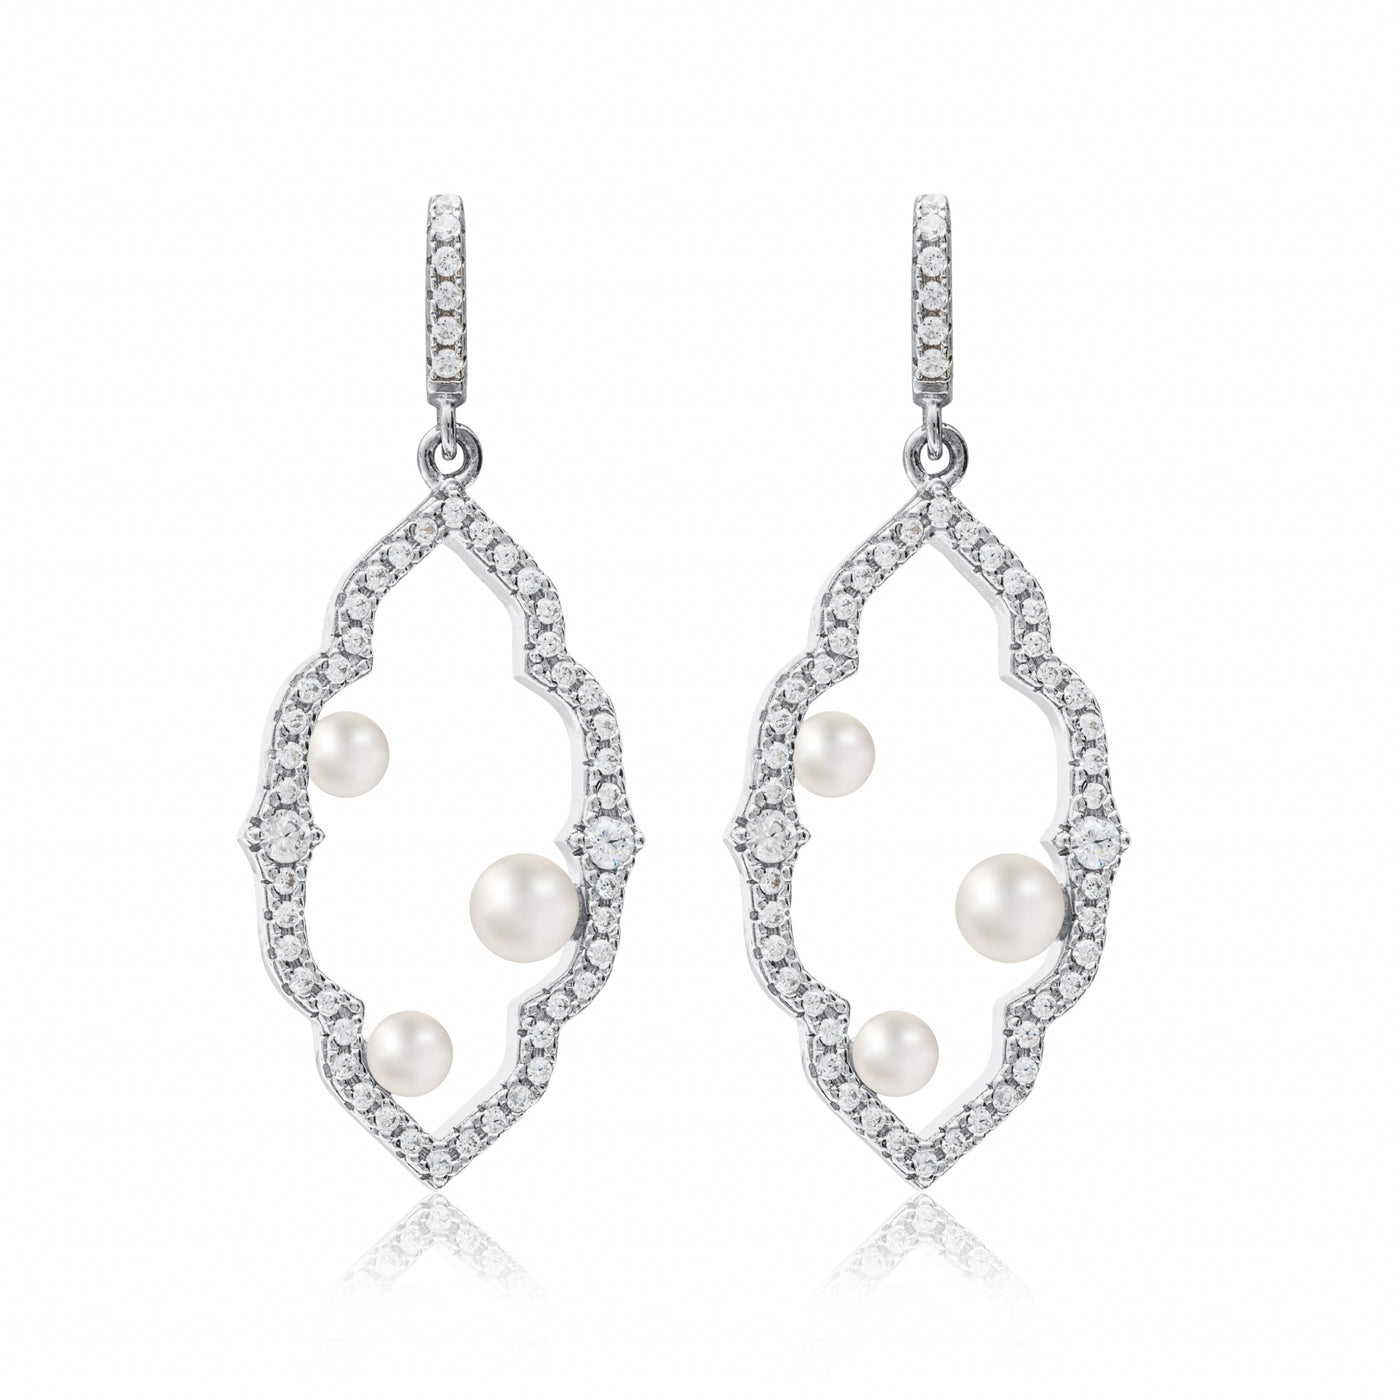 Analis Stoned Pearls - Earrings